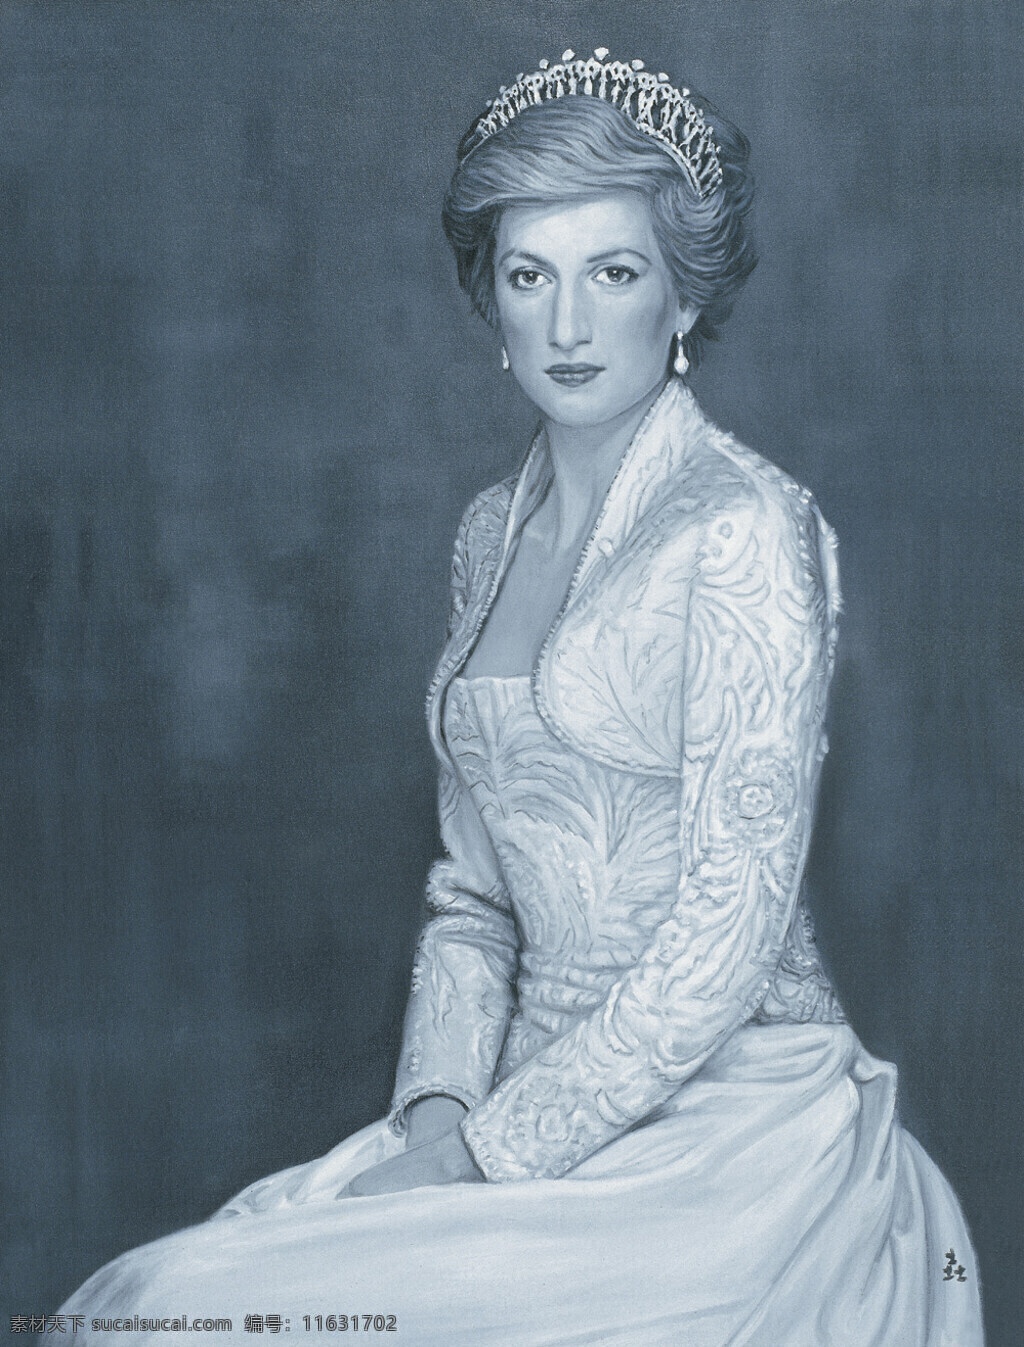 戴安娜 王妃 人物画 室内装饰设计 西洋画 油画 人民的王妃 查尔斯 首任 妻子 白文中作品 工艺美术 平面广告 装饰设计 文化艺术